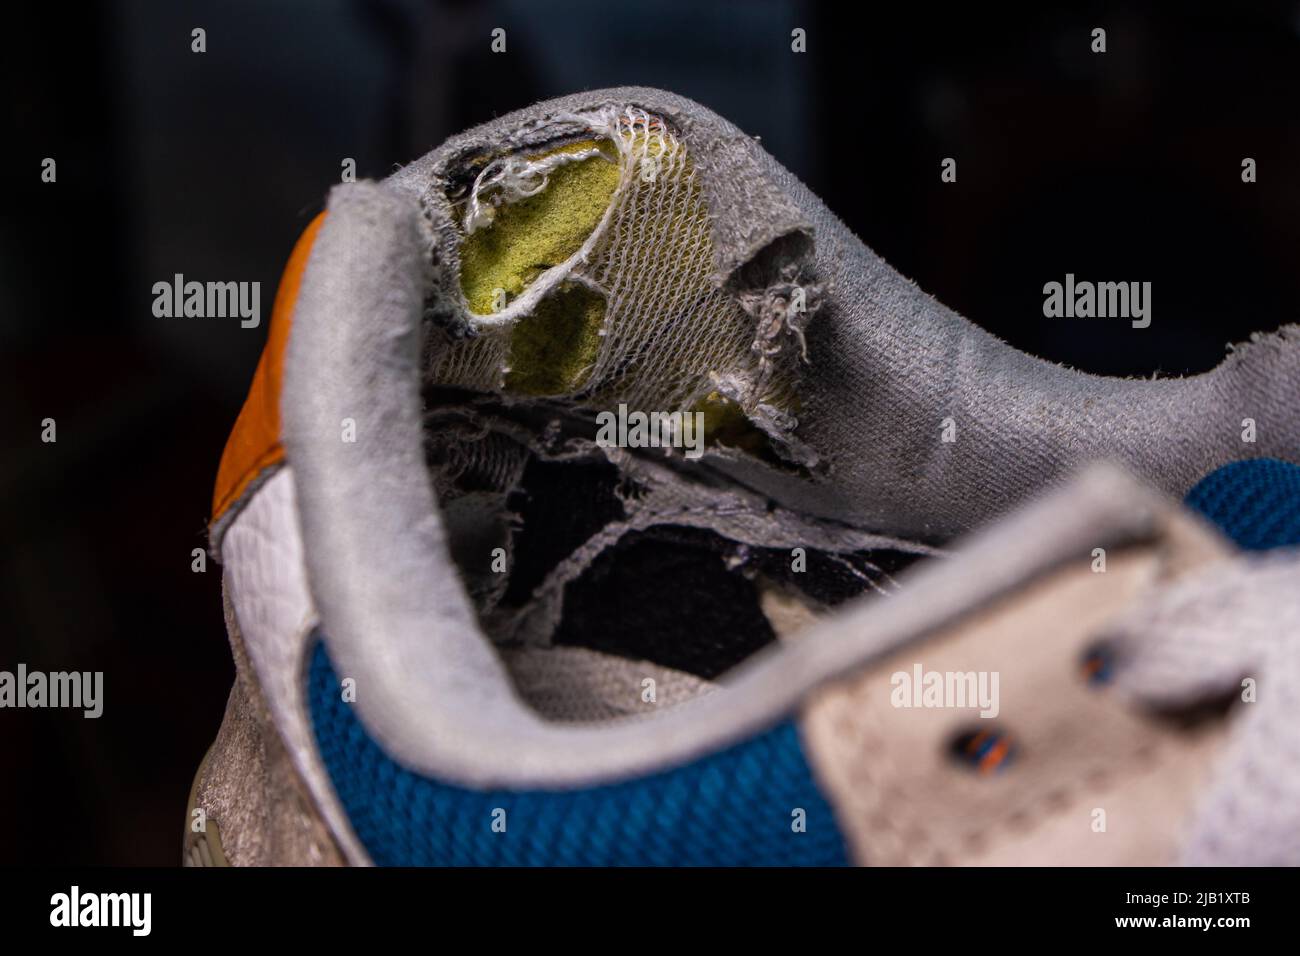 Primo piano vecchie scarpe rotte. La parte del tallone della scarpa nell'immagine è usurata e danneggiata. Foto Stock